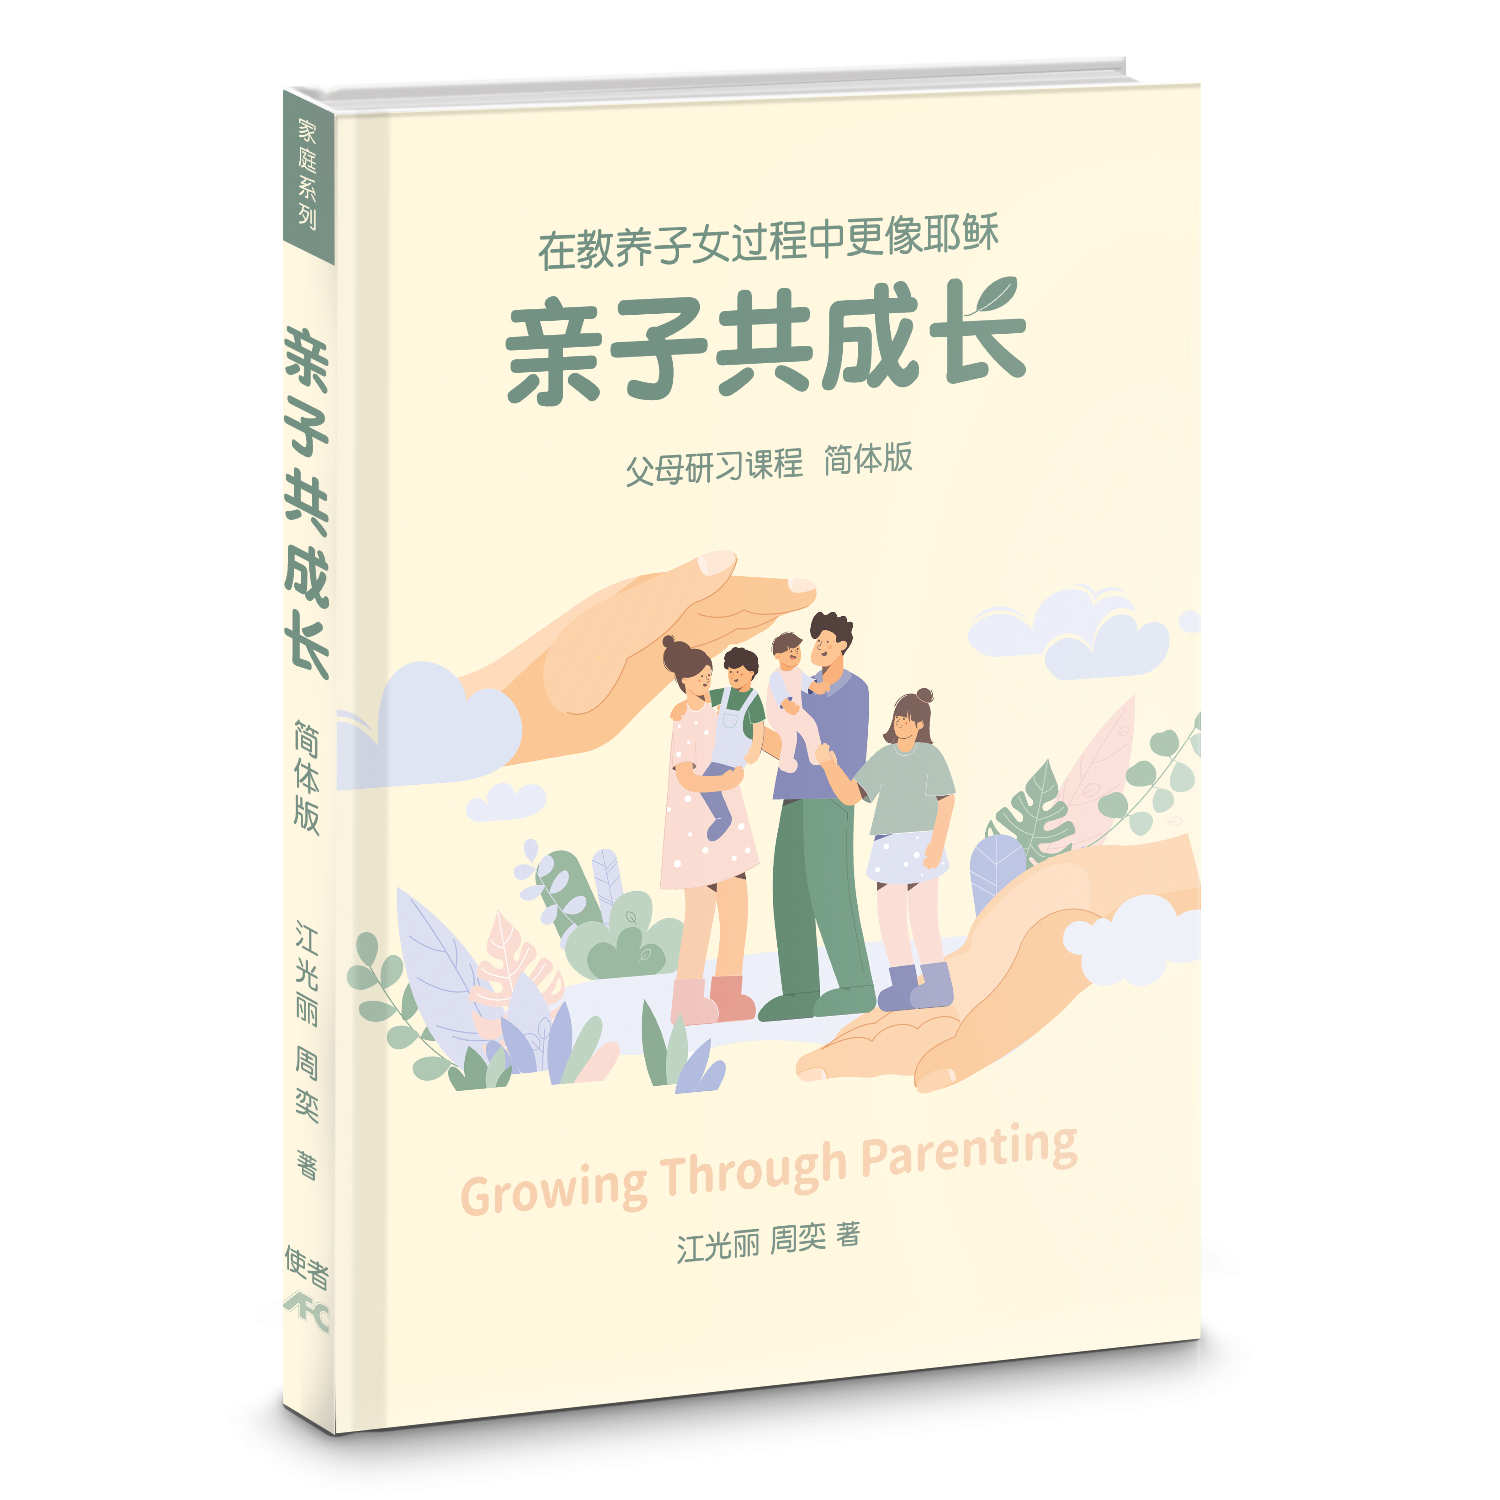 親子共成長-父母研習課程-簡體（10本以上特價$12) Growing Through Parenting Simp.